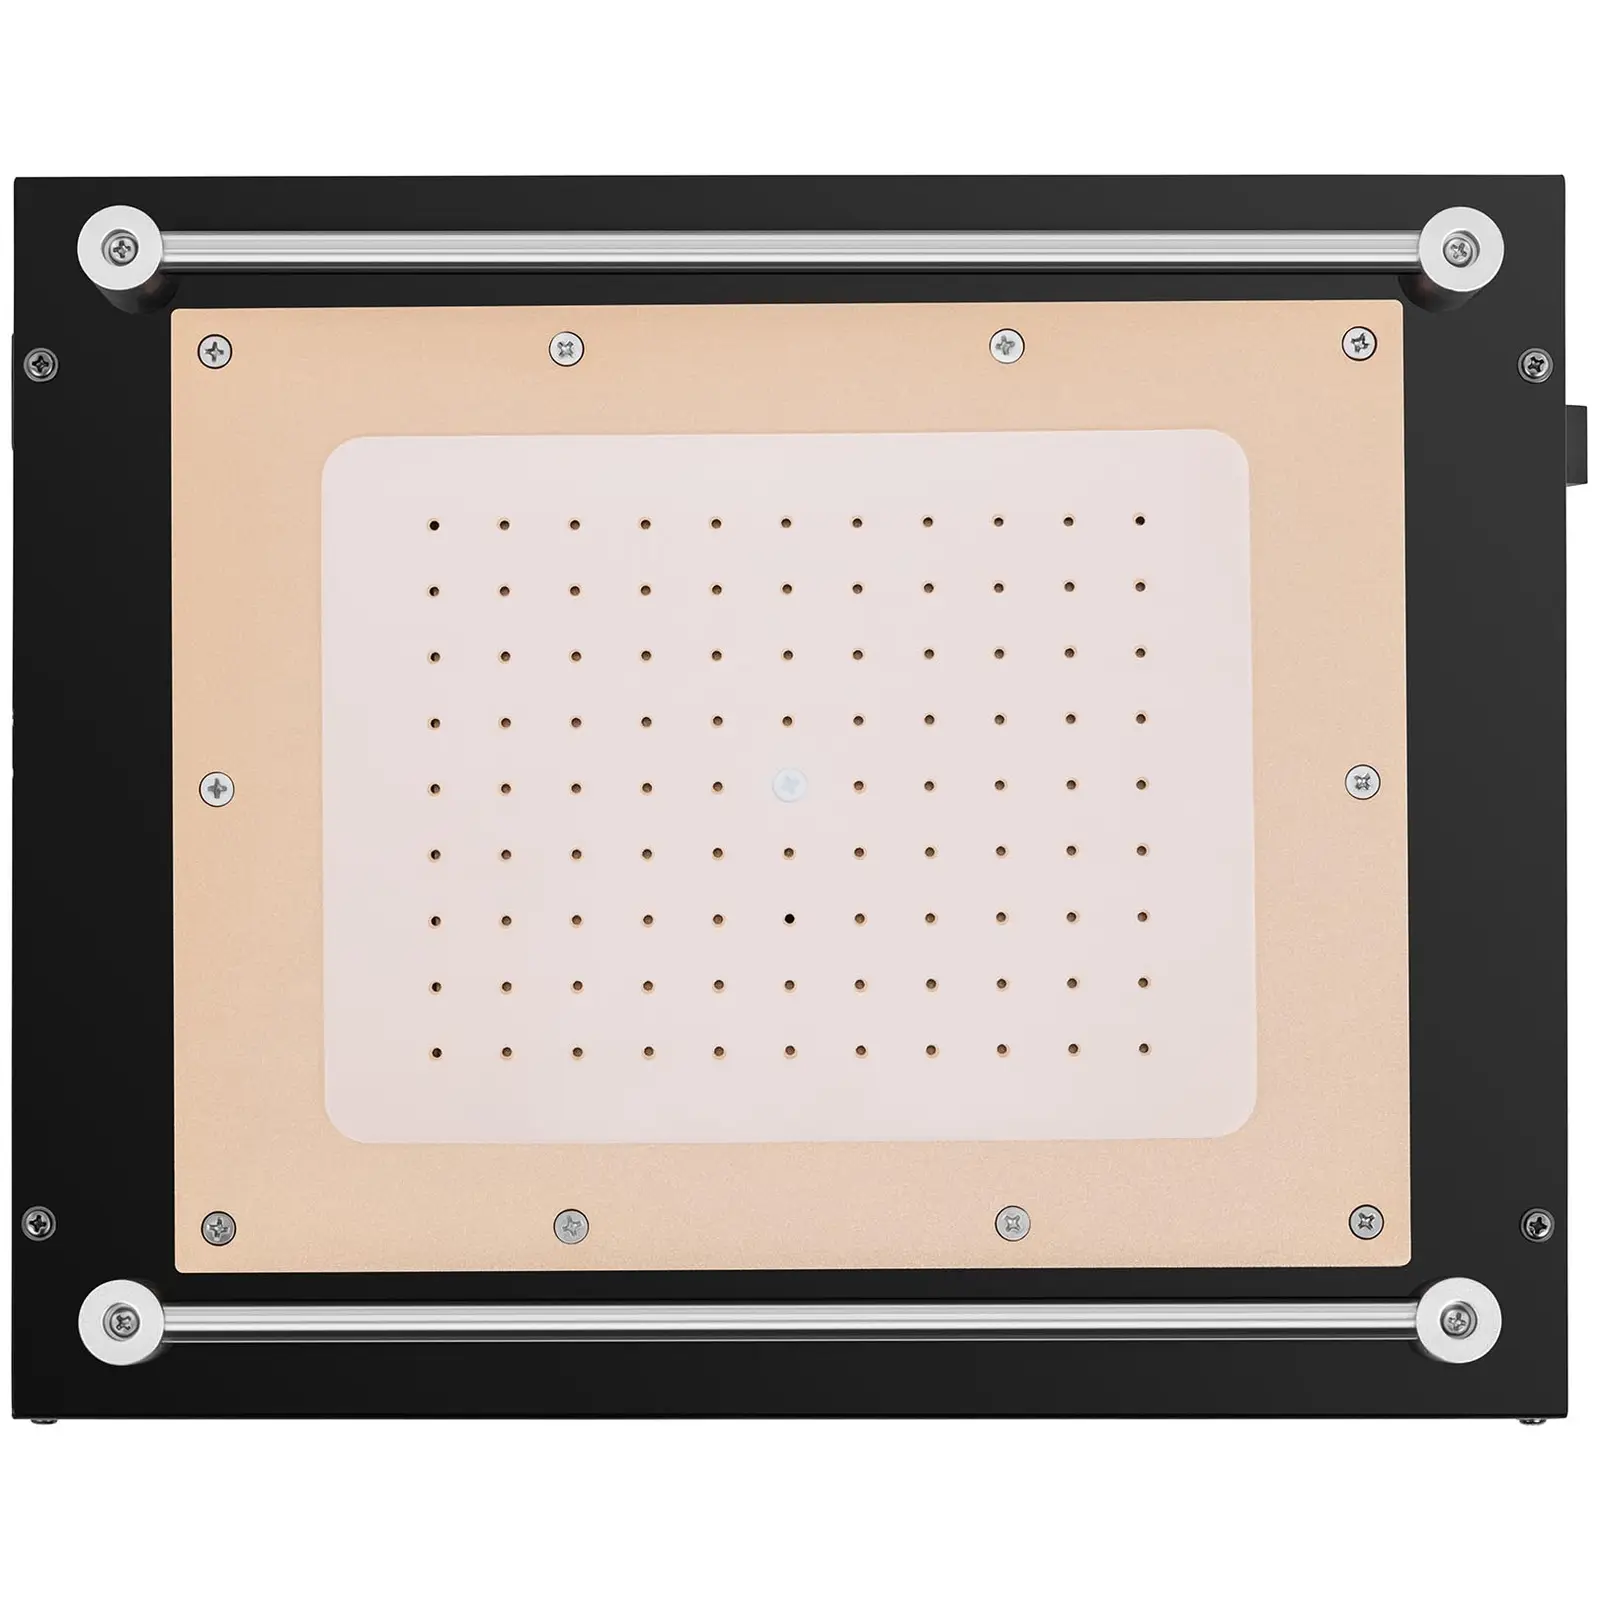 LCD-separator - Opptil 12" - 1180W - LED-display - USB-port